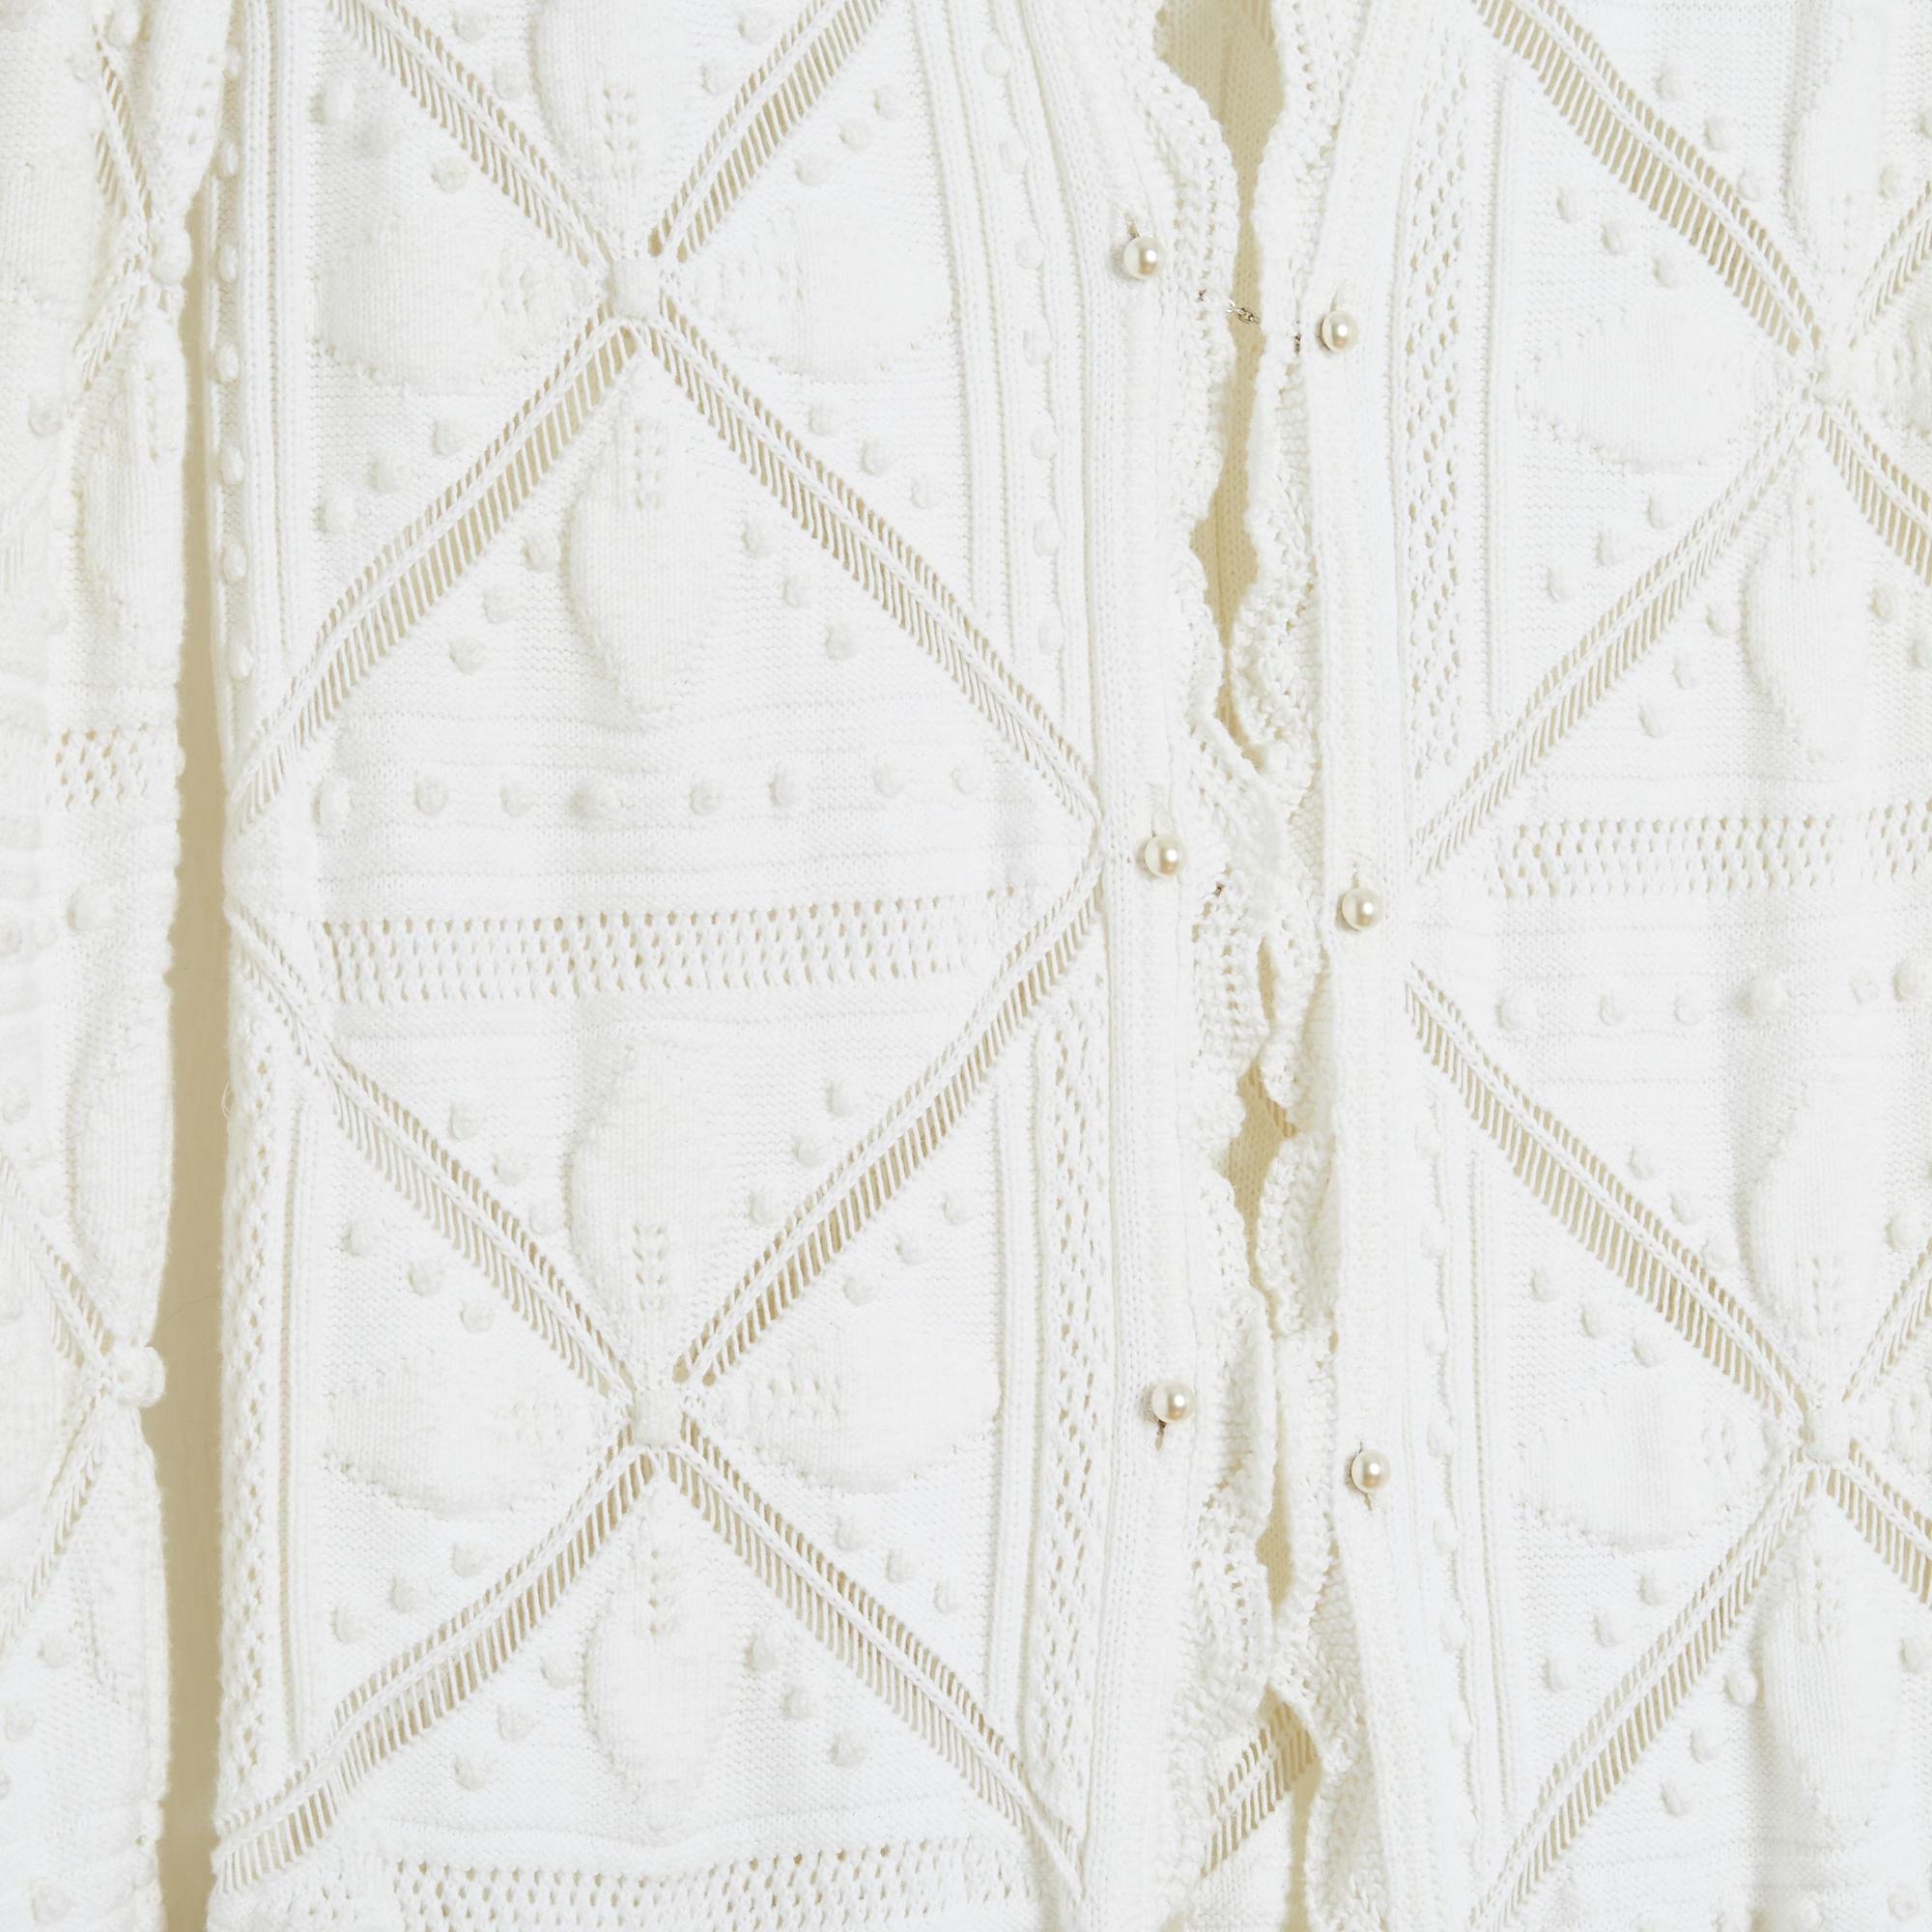 Chanel lange Jacke SS 2004 Kollektion weiße Baumwoll-Strickjacke mit geometrischen Mustern und gerüschten Rändern, vorne mit 3 perlenbesetzten Haarspangen geschlossen, ungefüttert. Größe 38FR d.h. US8 : Mitte 40 cm, Brust 42 cm, Länge 104 cm, Ärmel